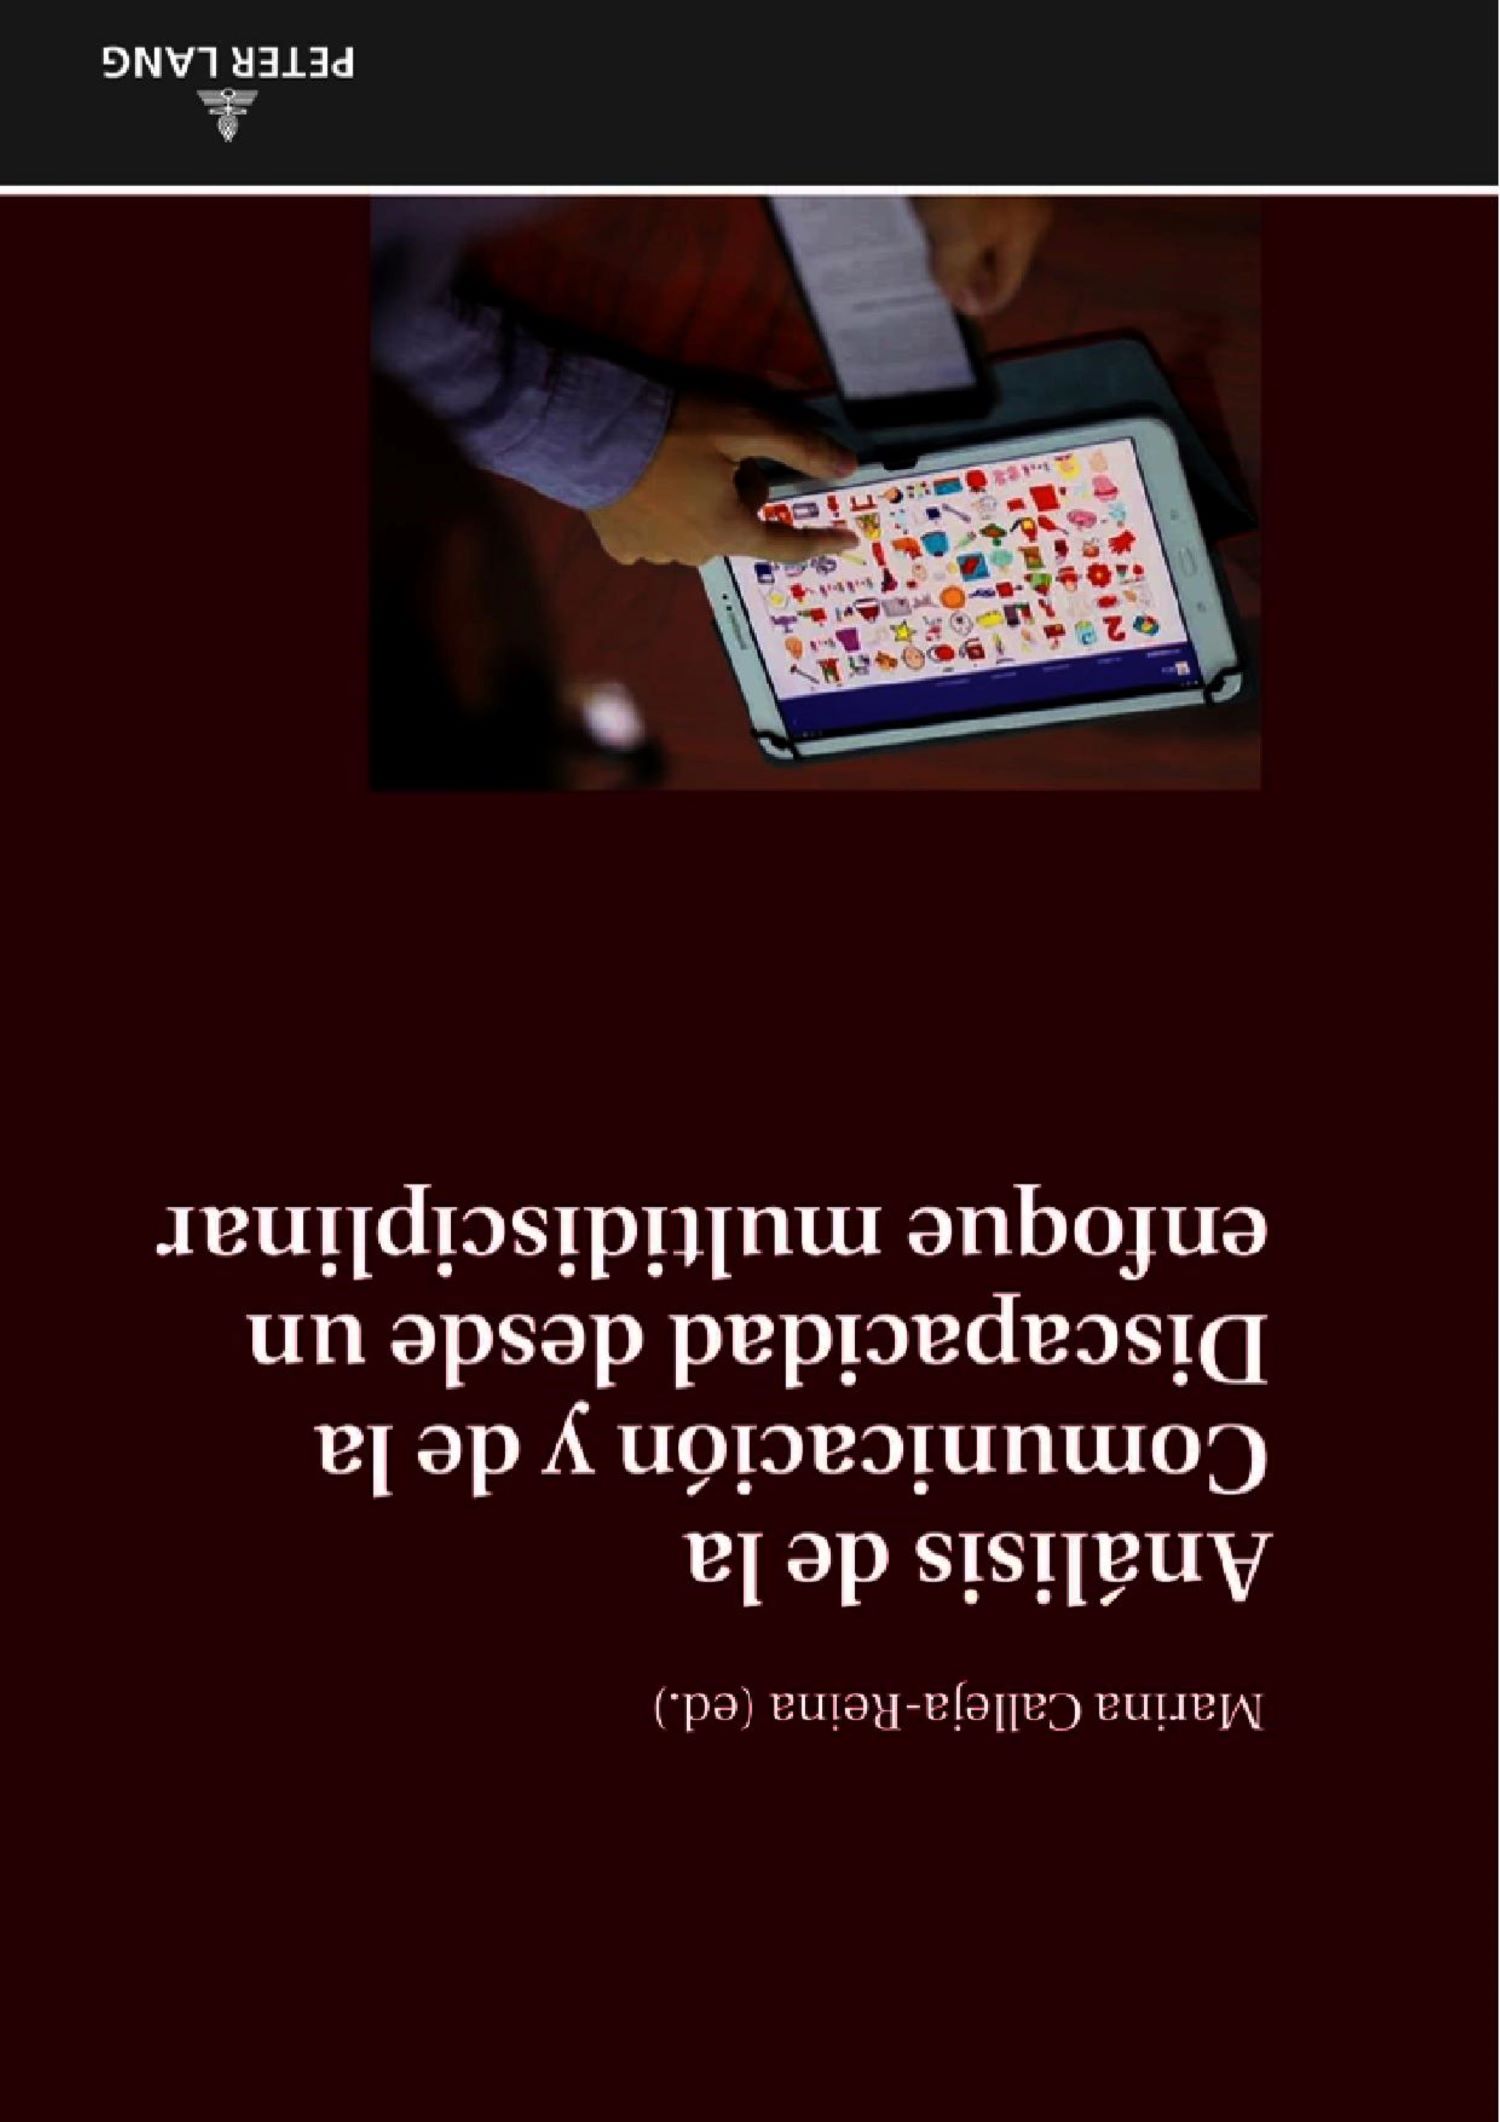 Imagen de portada del libro Análisis de la comunicación y de la discapacidad intelectual desde un enfoque multidisciplinar